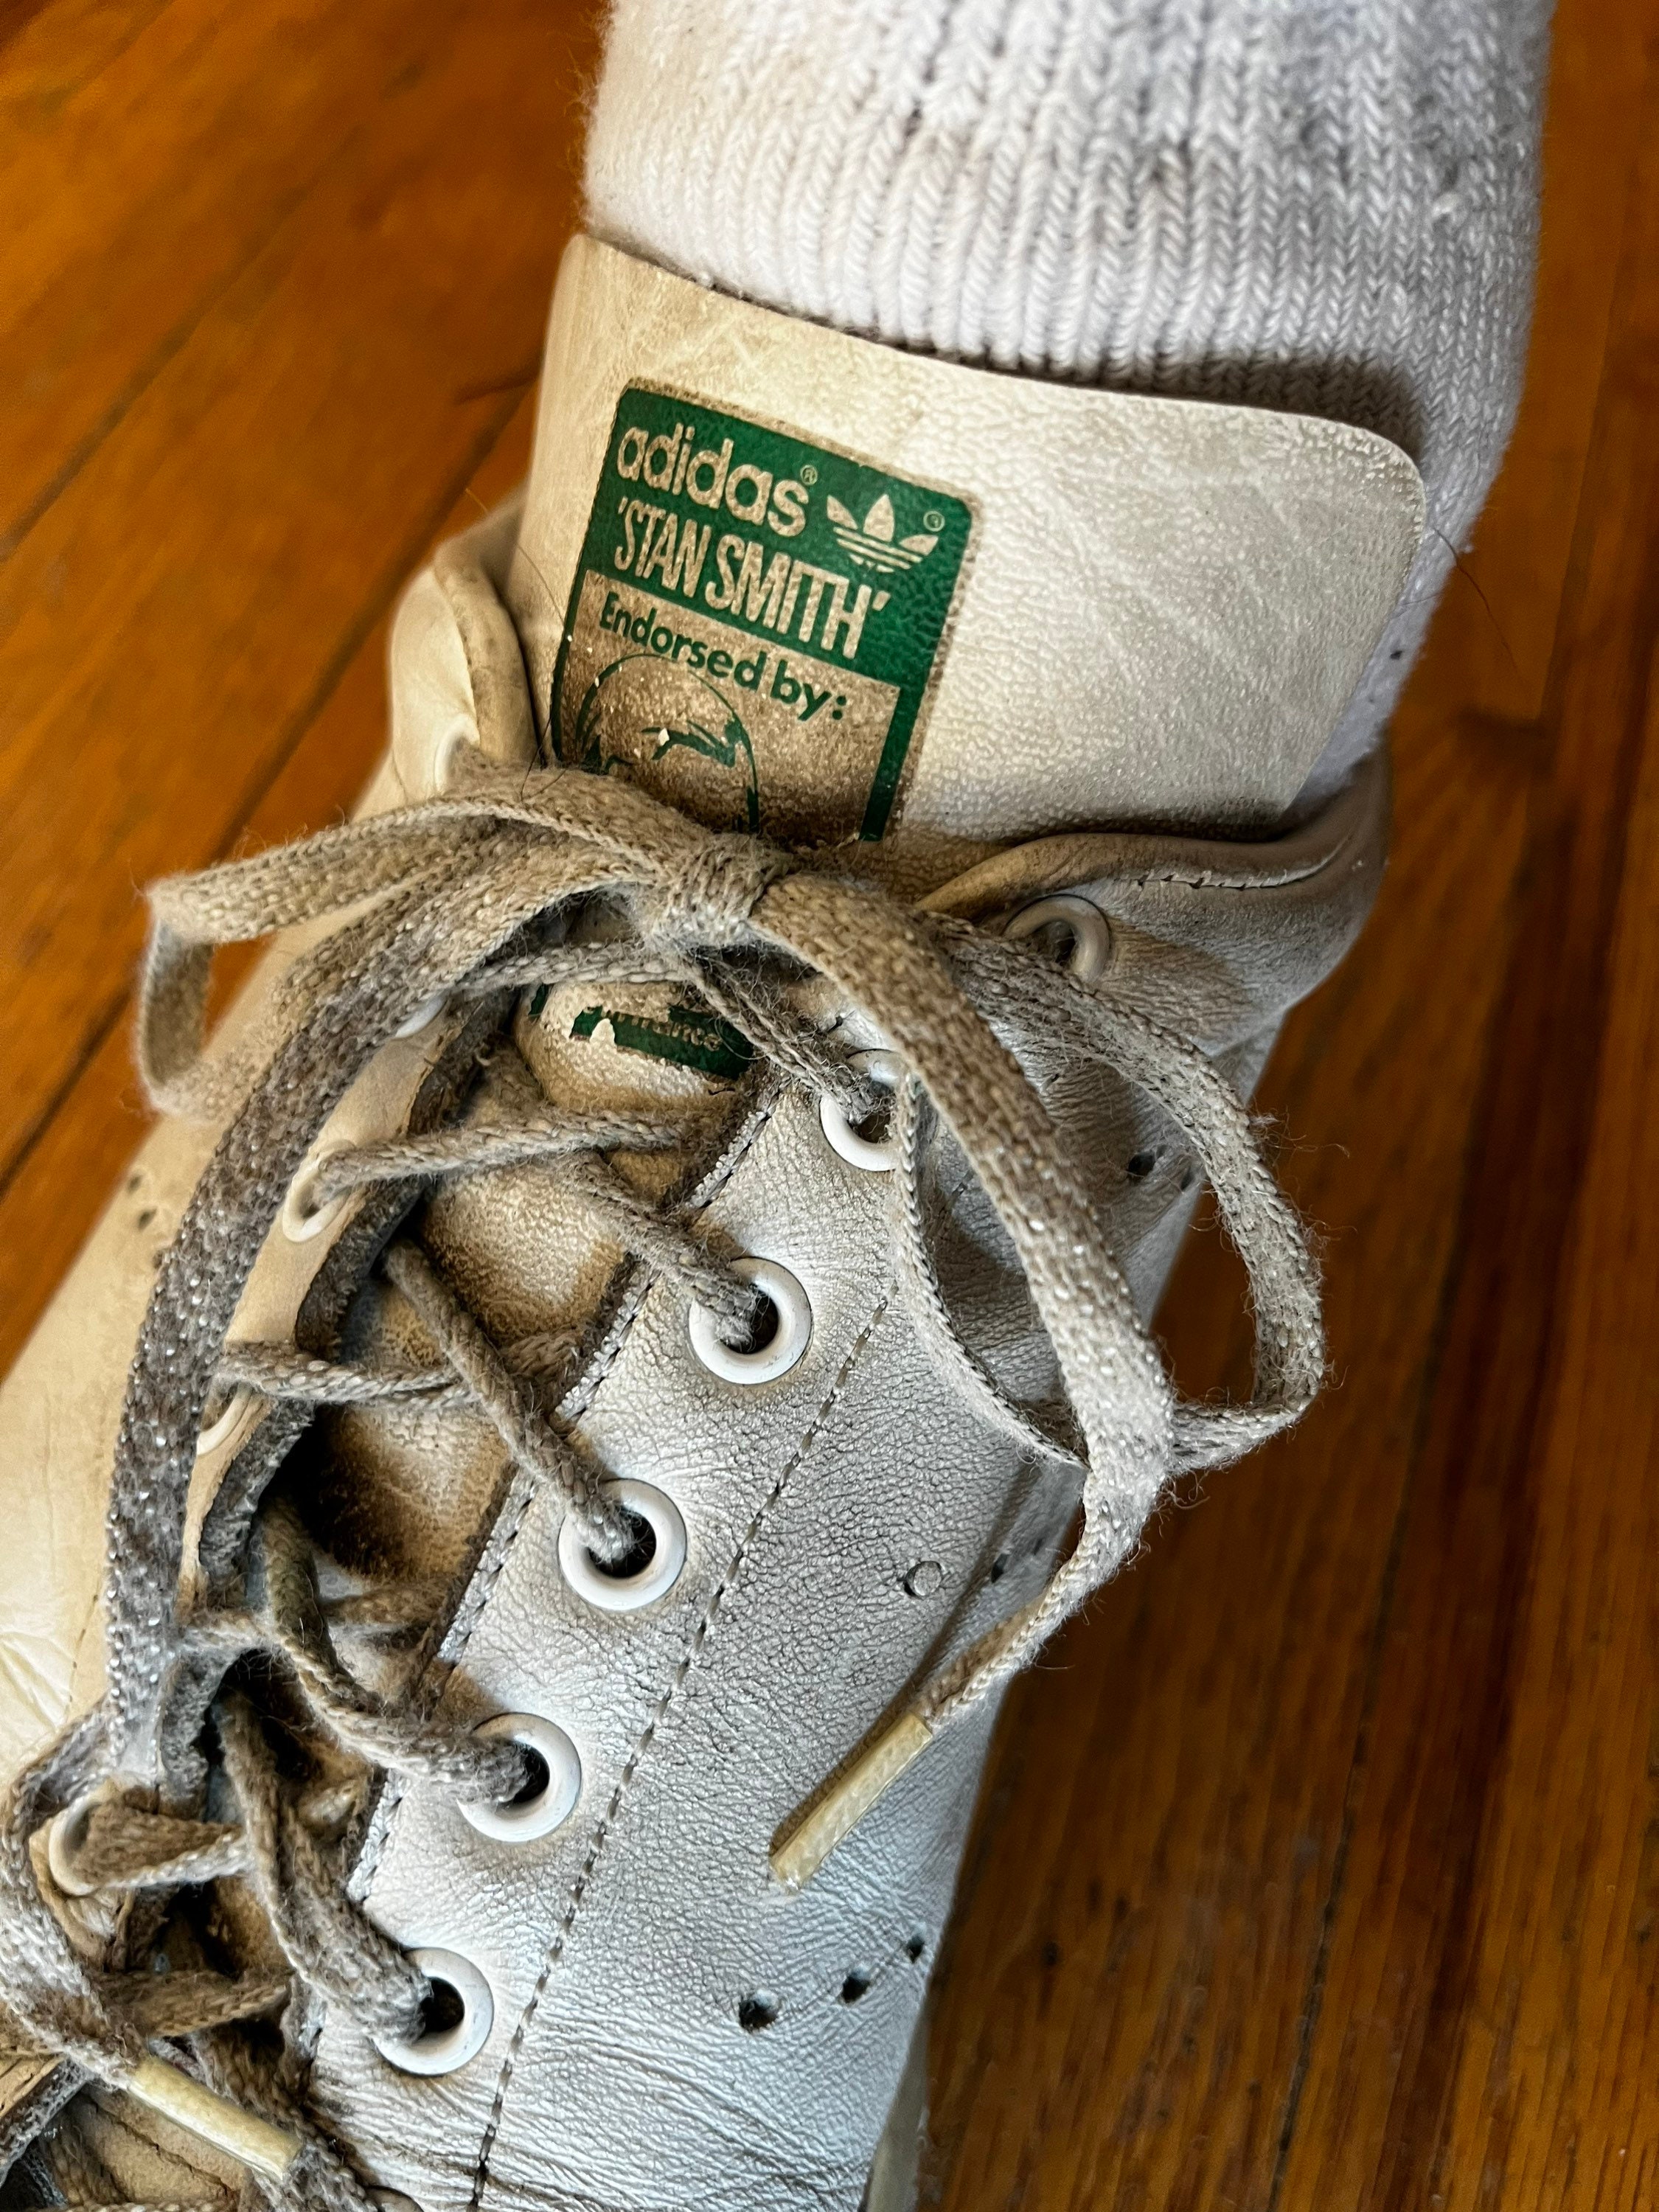 Adidas Rom Shoe Vintage - Etsy